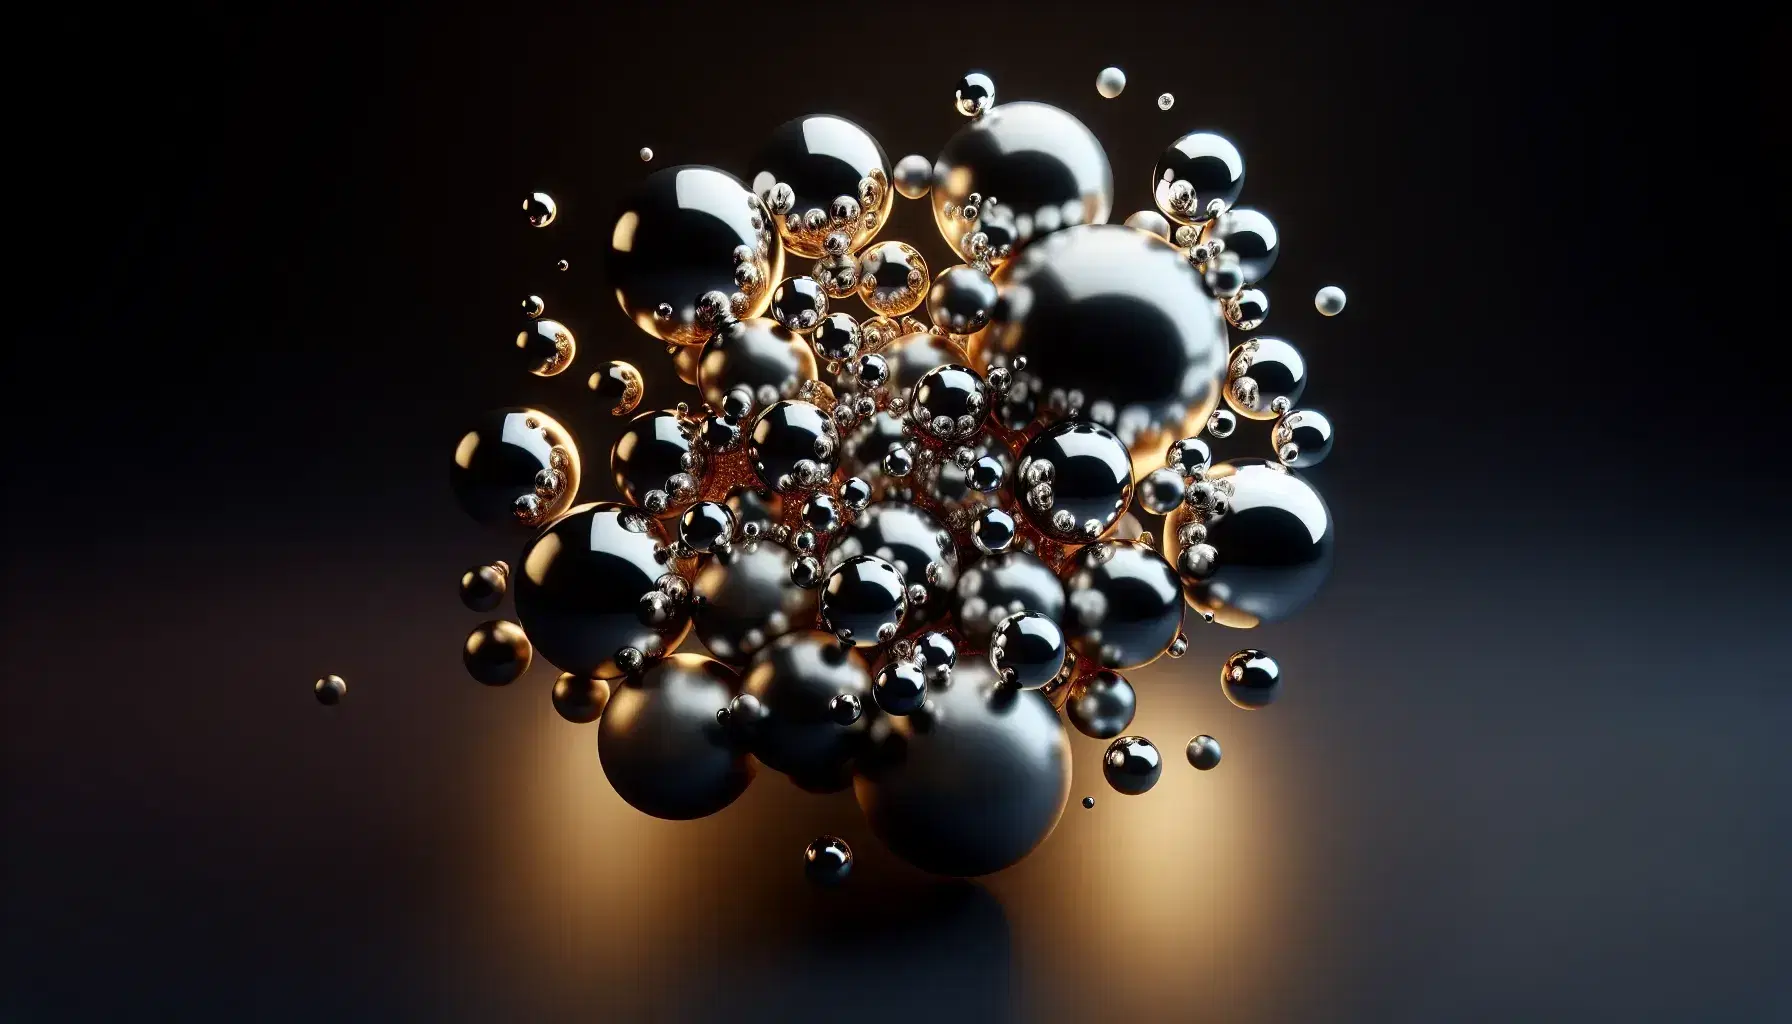 Esferas metálicas de distintos tamaños flotando en el espacio con reflejos de luz sobre fondo negro, creando un efecto tridimensional.